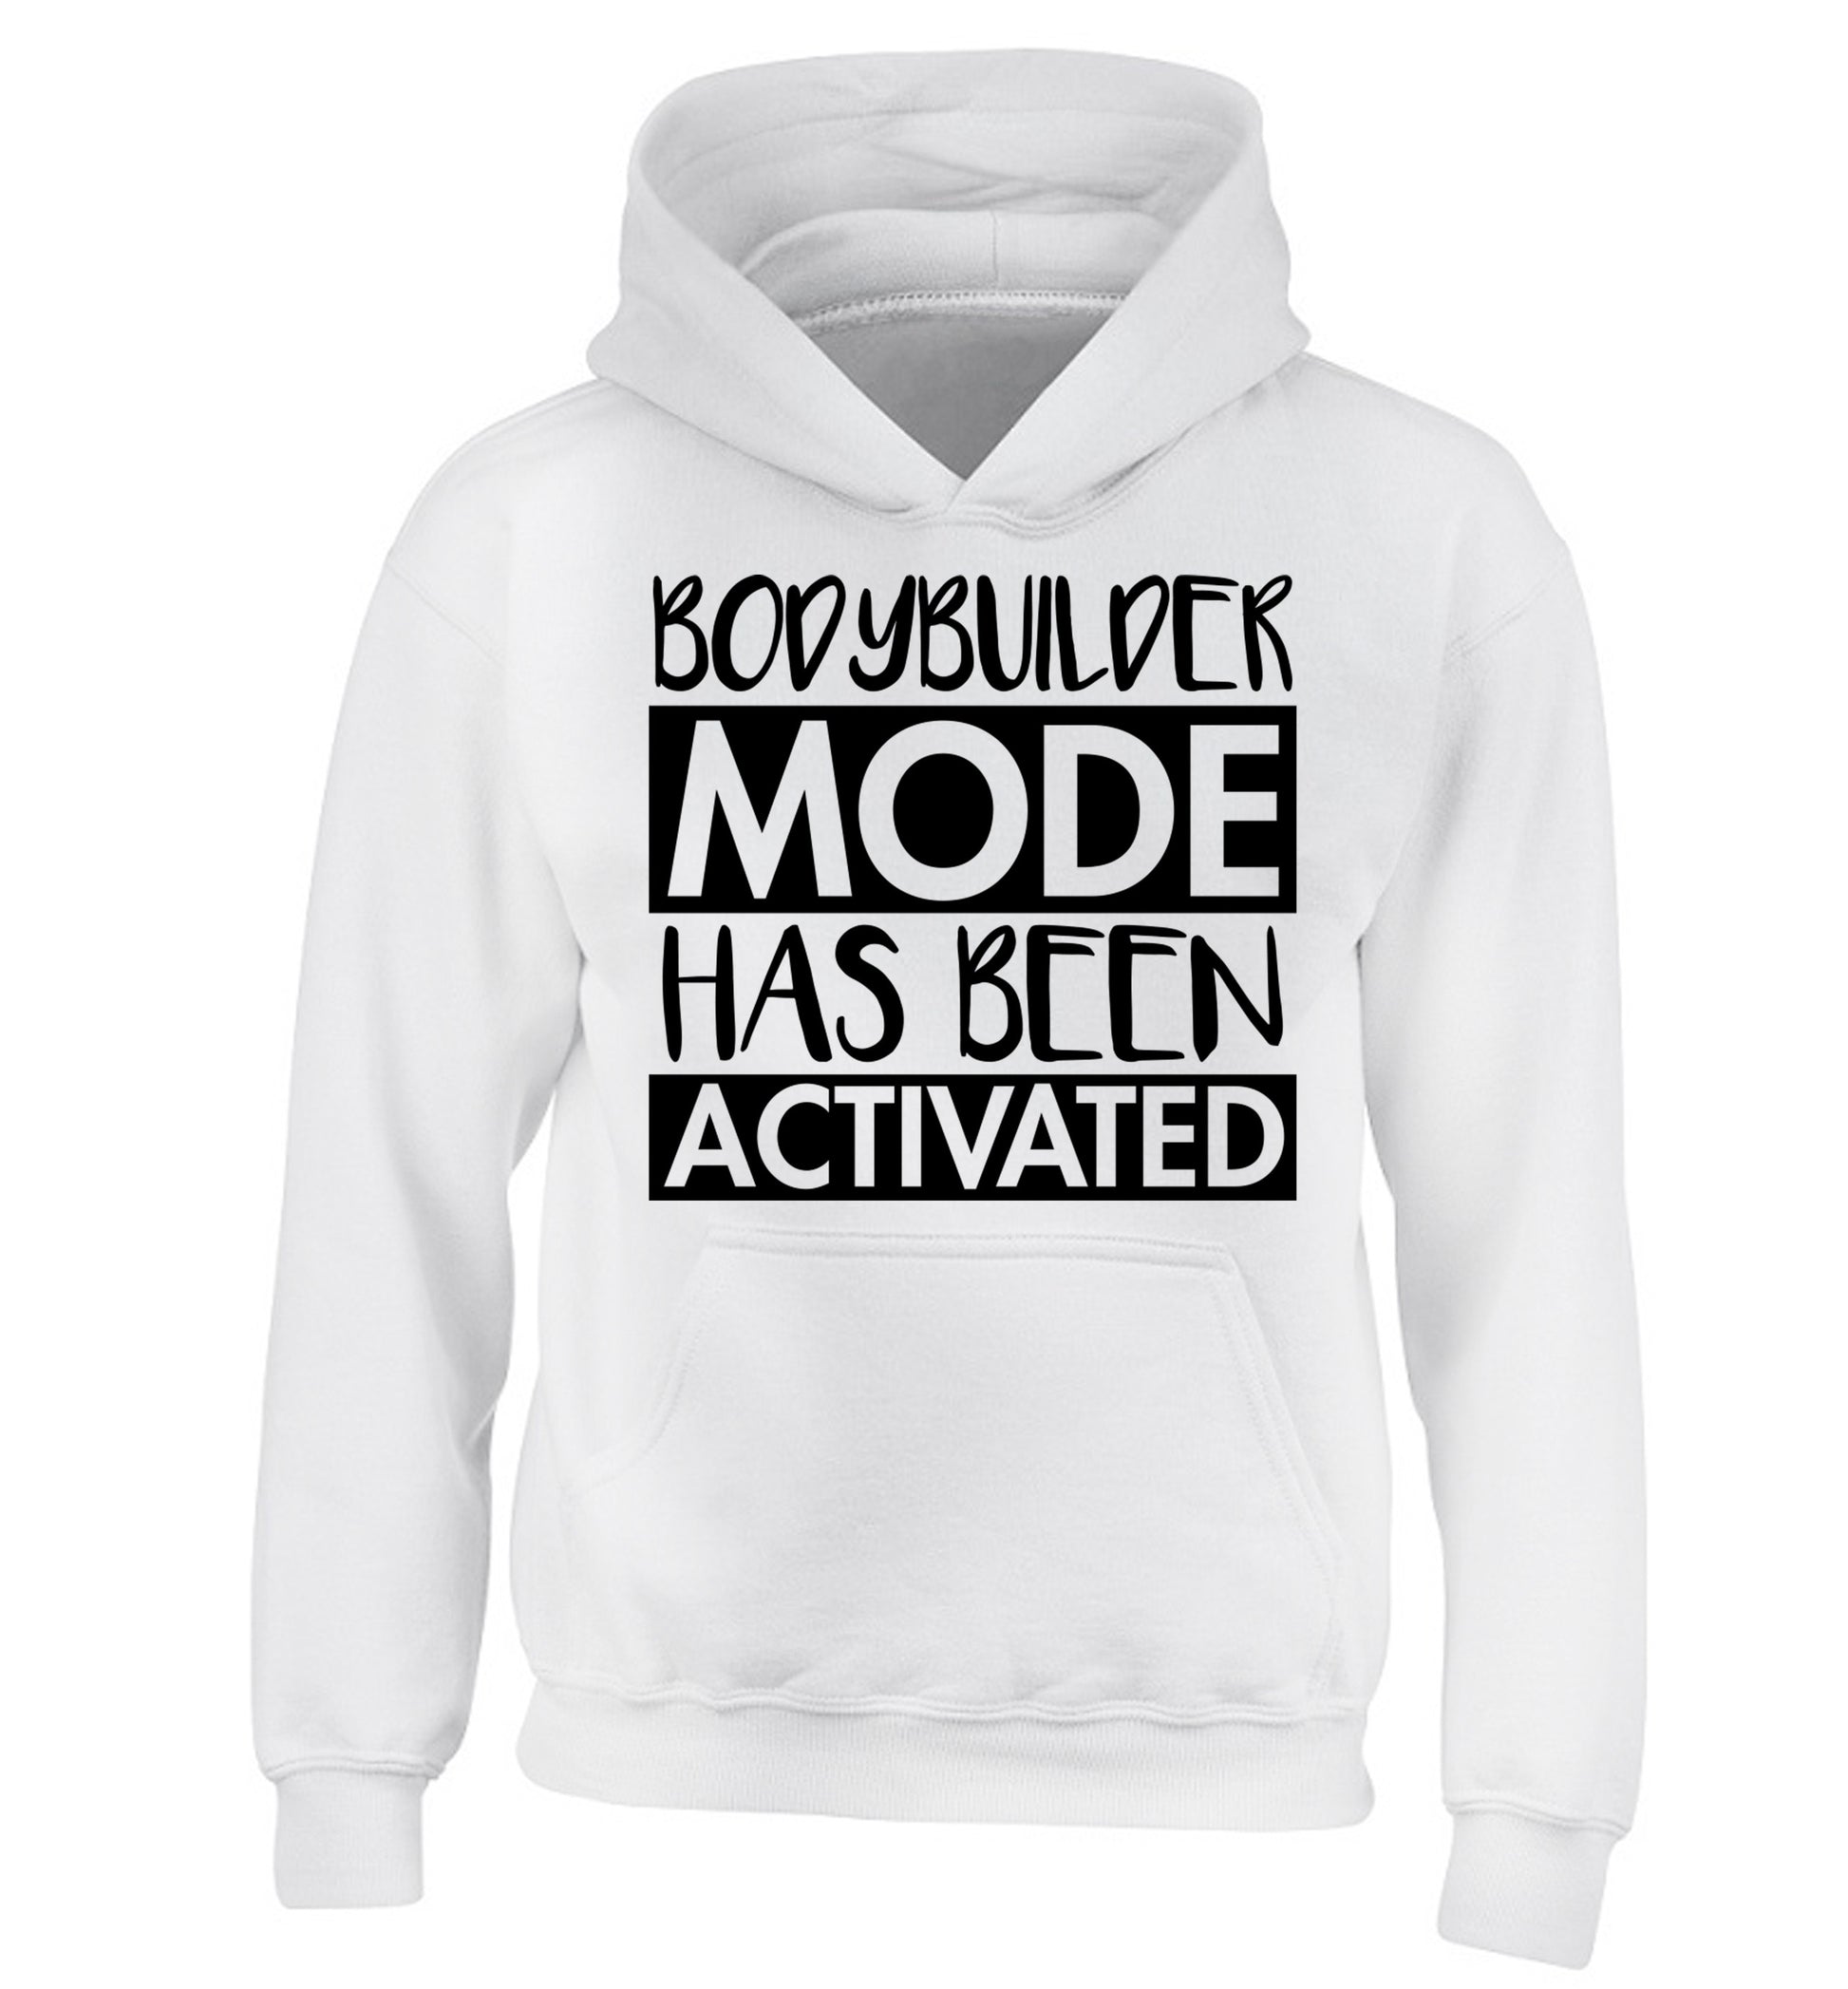 Bodybuilder mode activated children's white hoodie 12-14 Years